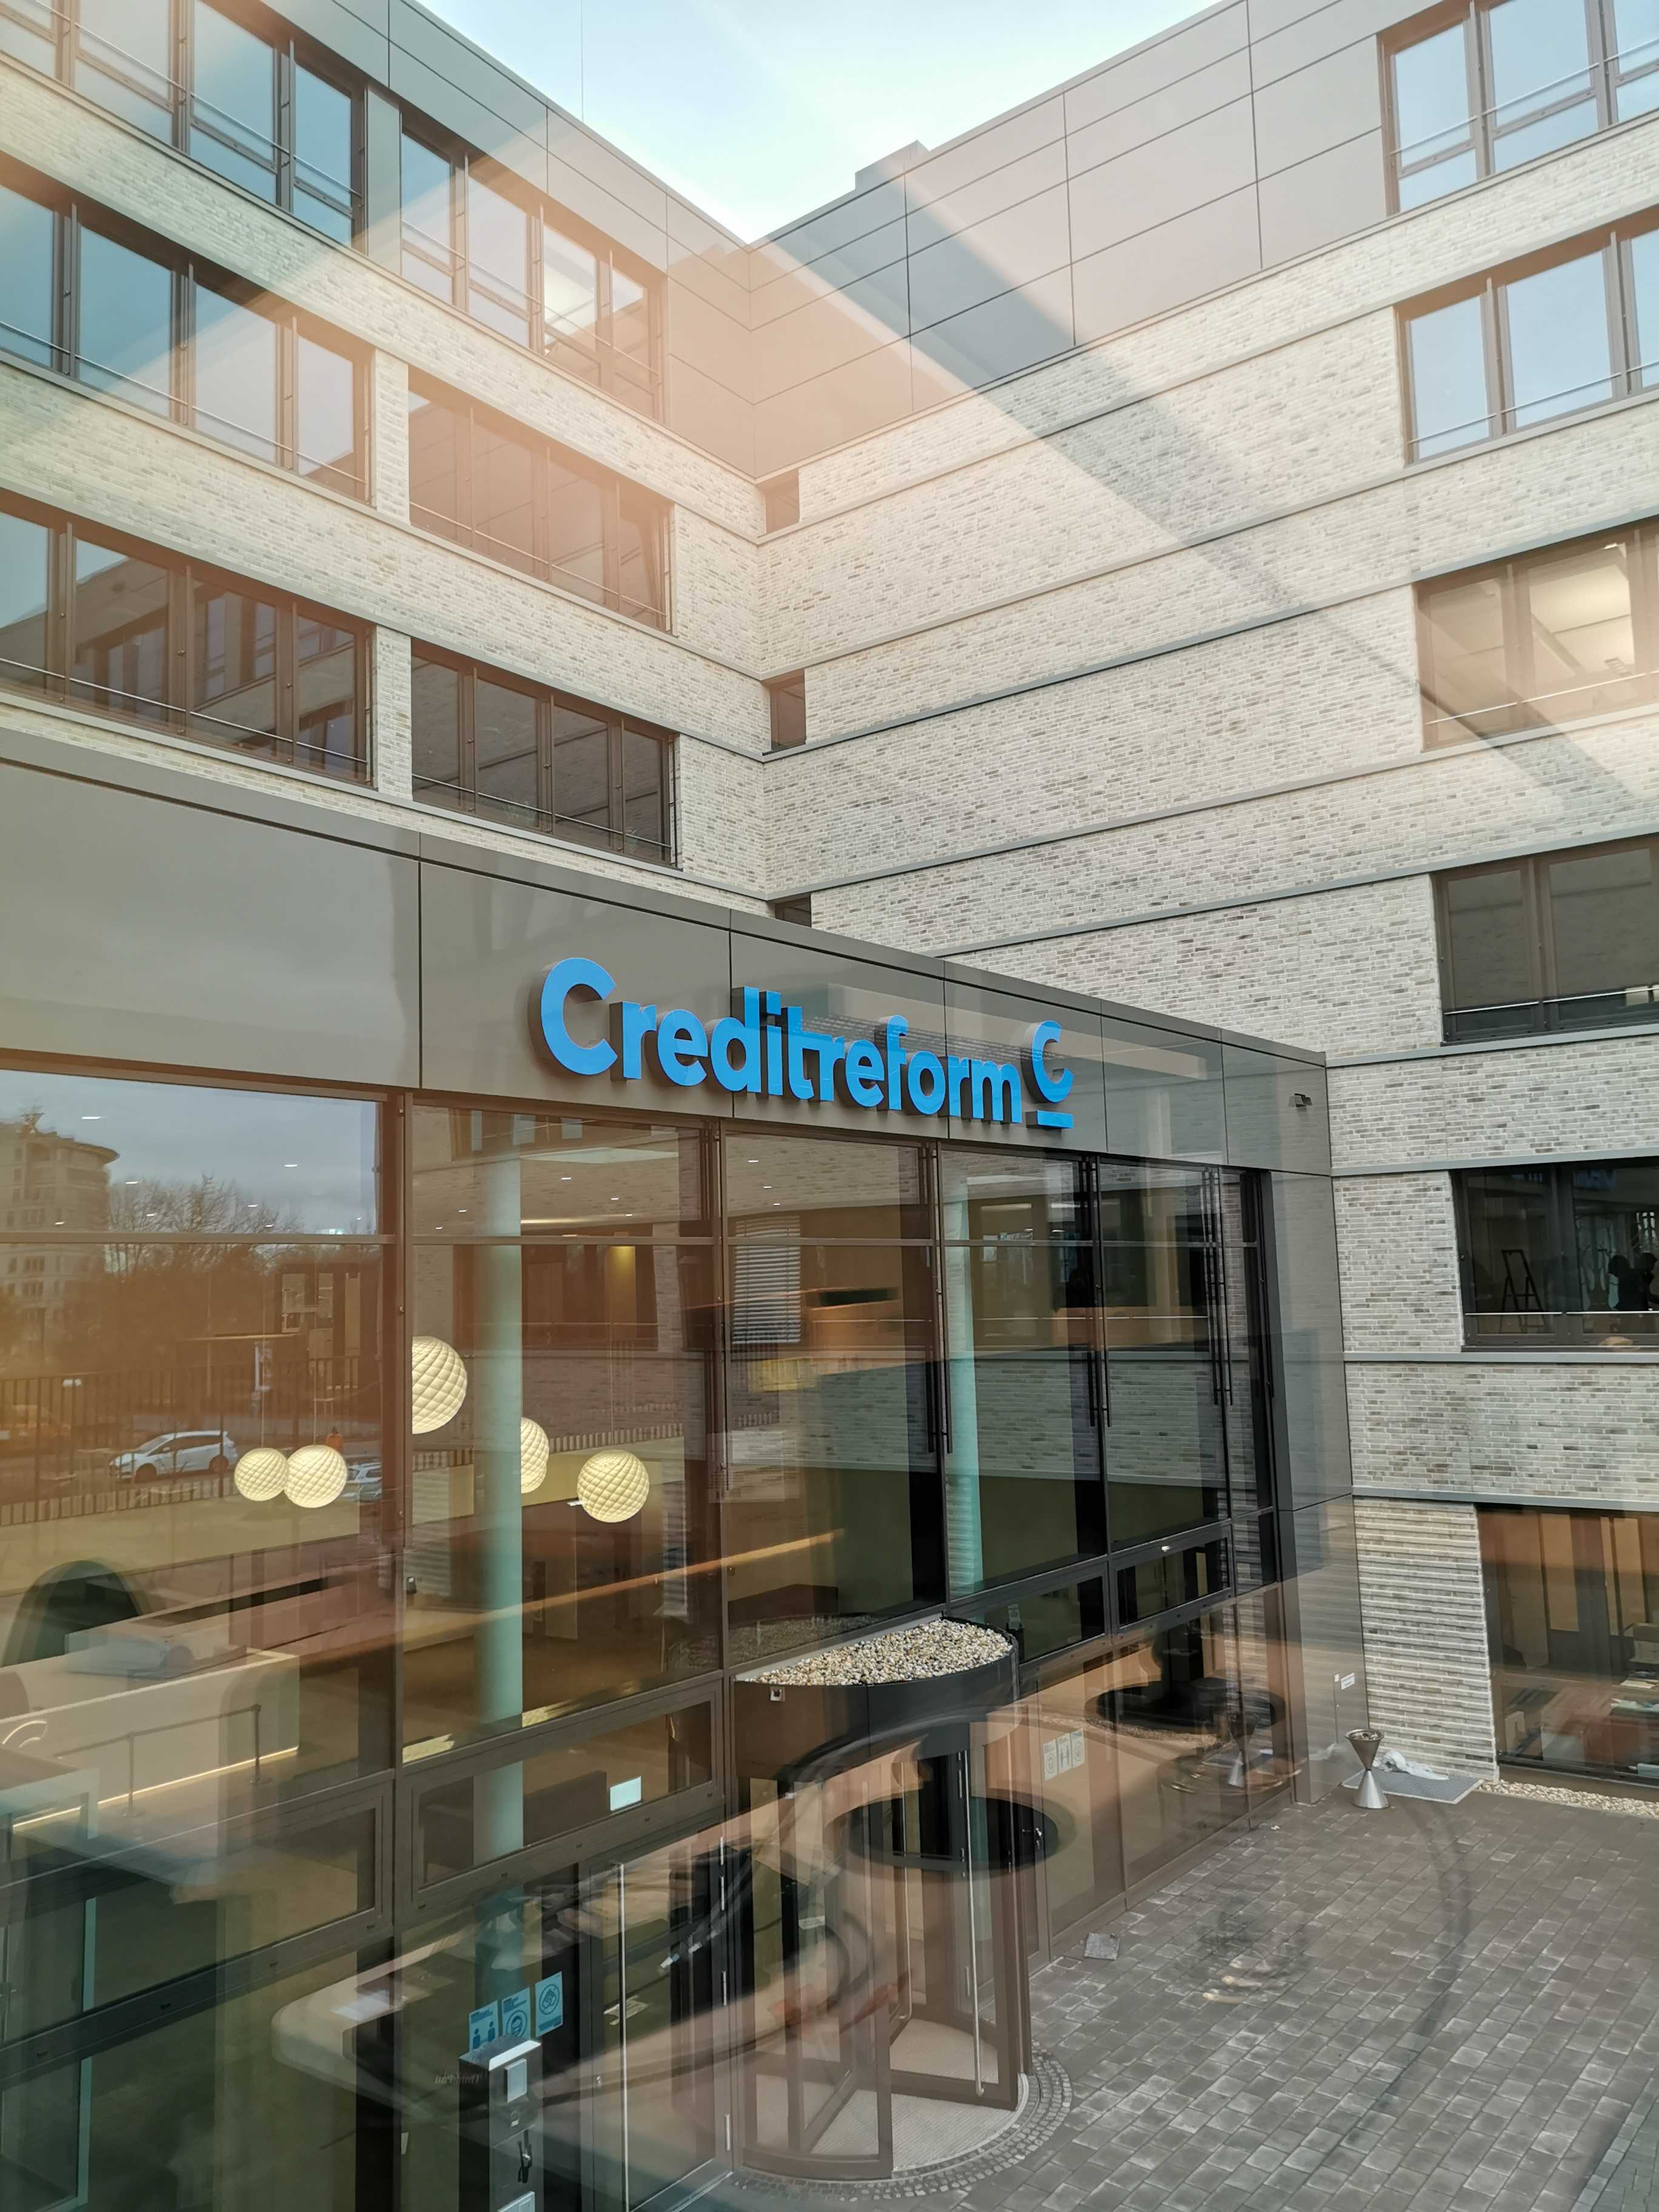 Bild 1 Verband der Vereine Creditreform e.V. in Neuss